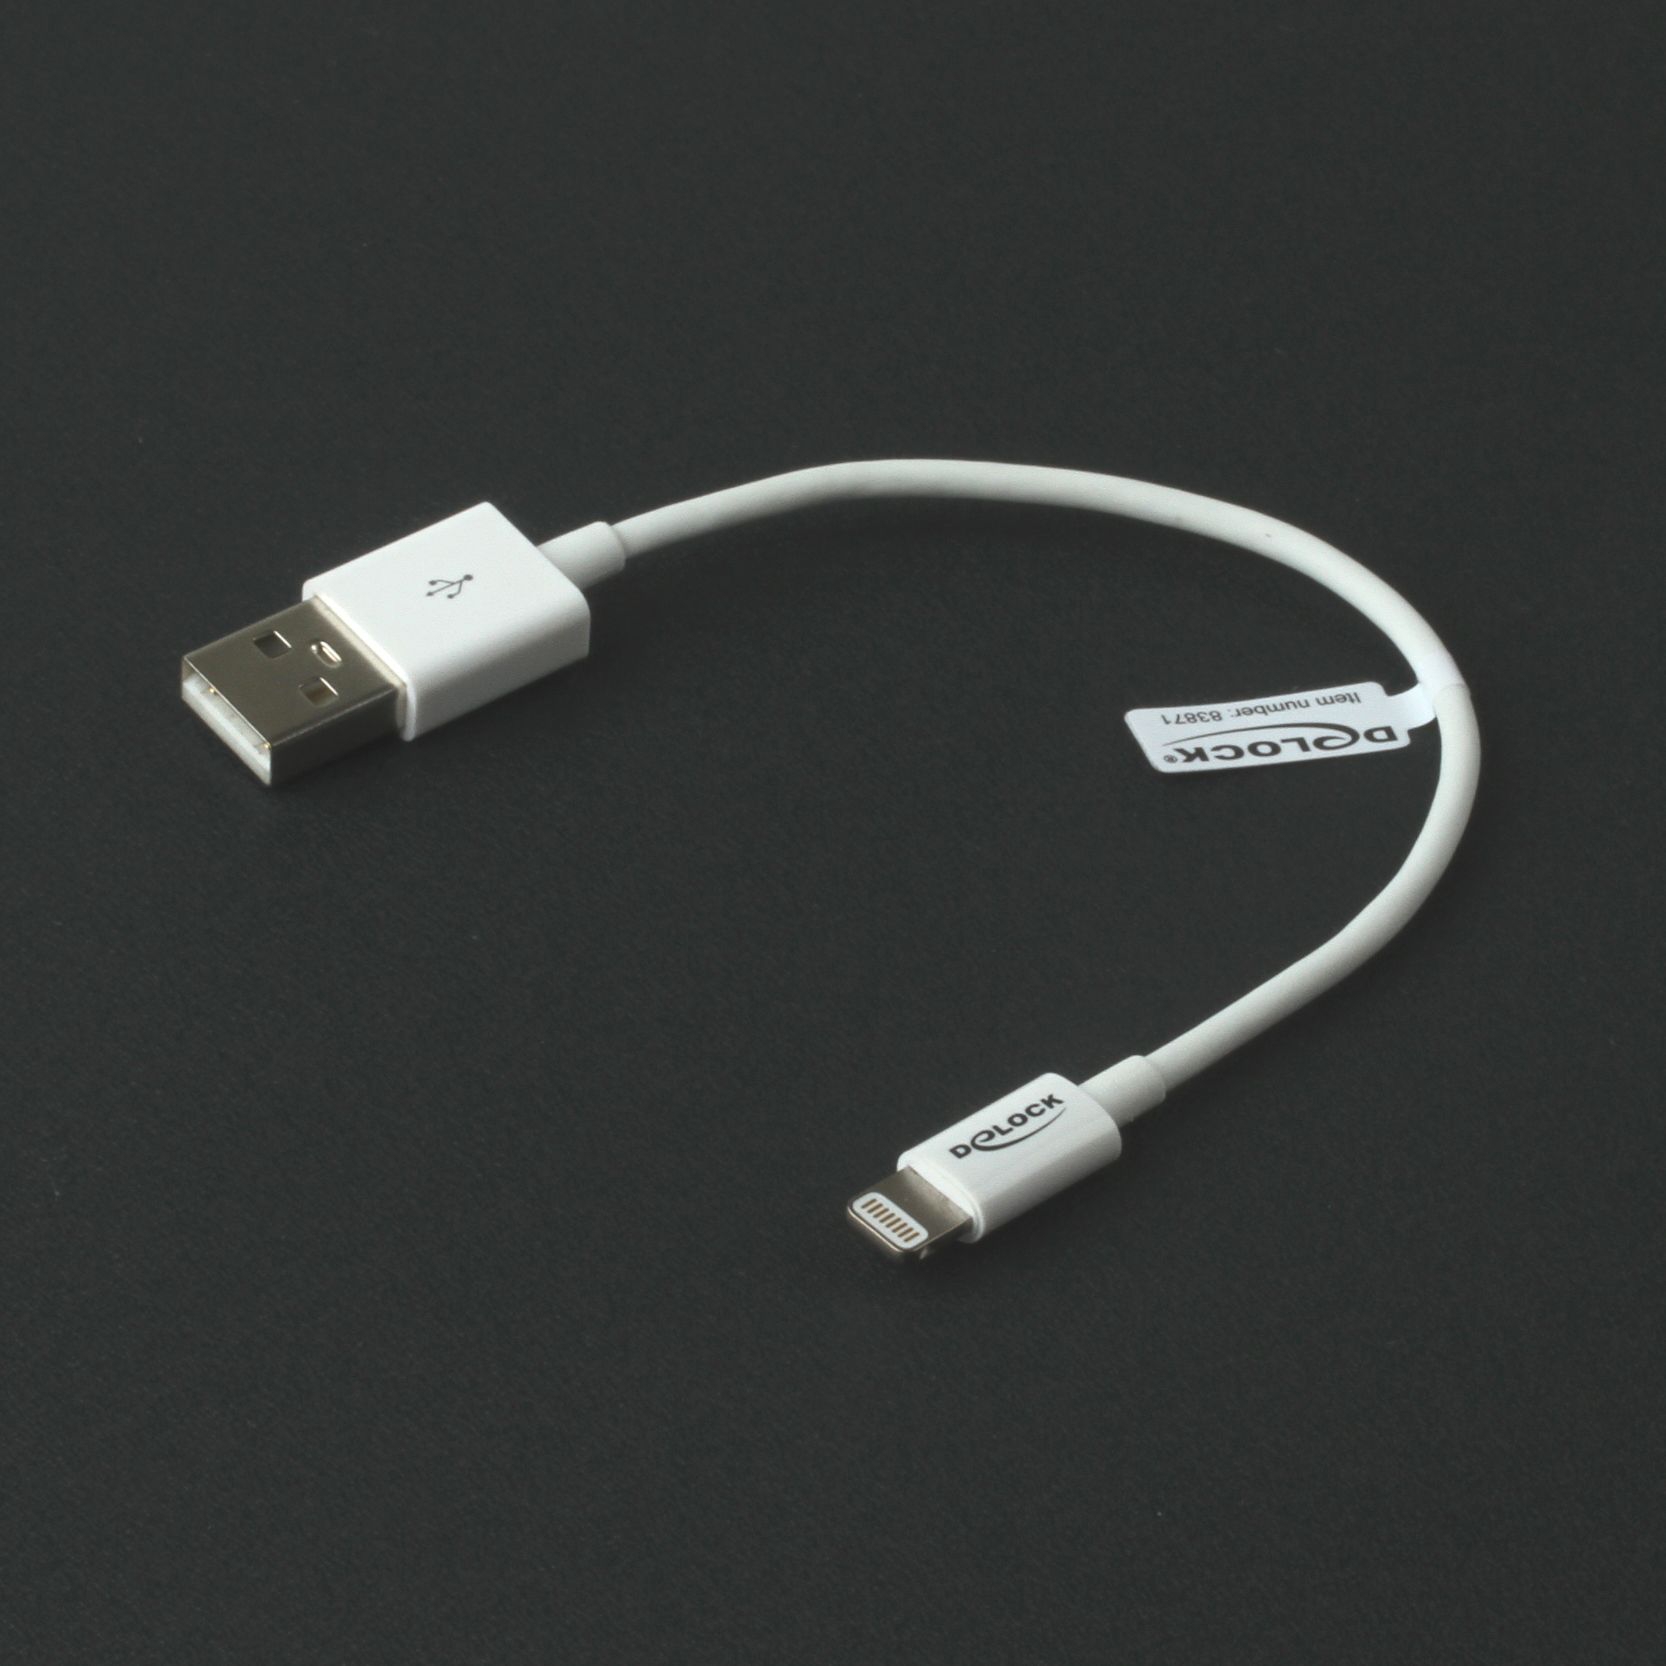 Lade- & Sync-Kabel für iPhone, USB A an Lightning-Port, Apple MFI zertifiziert, 15cm